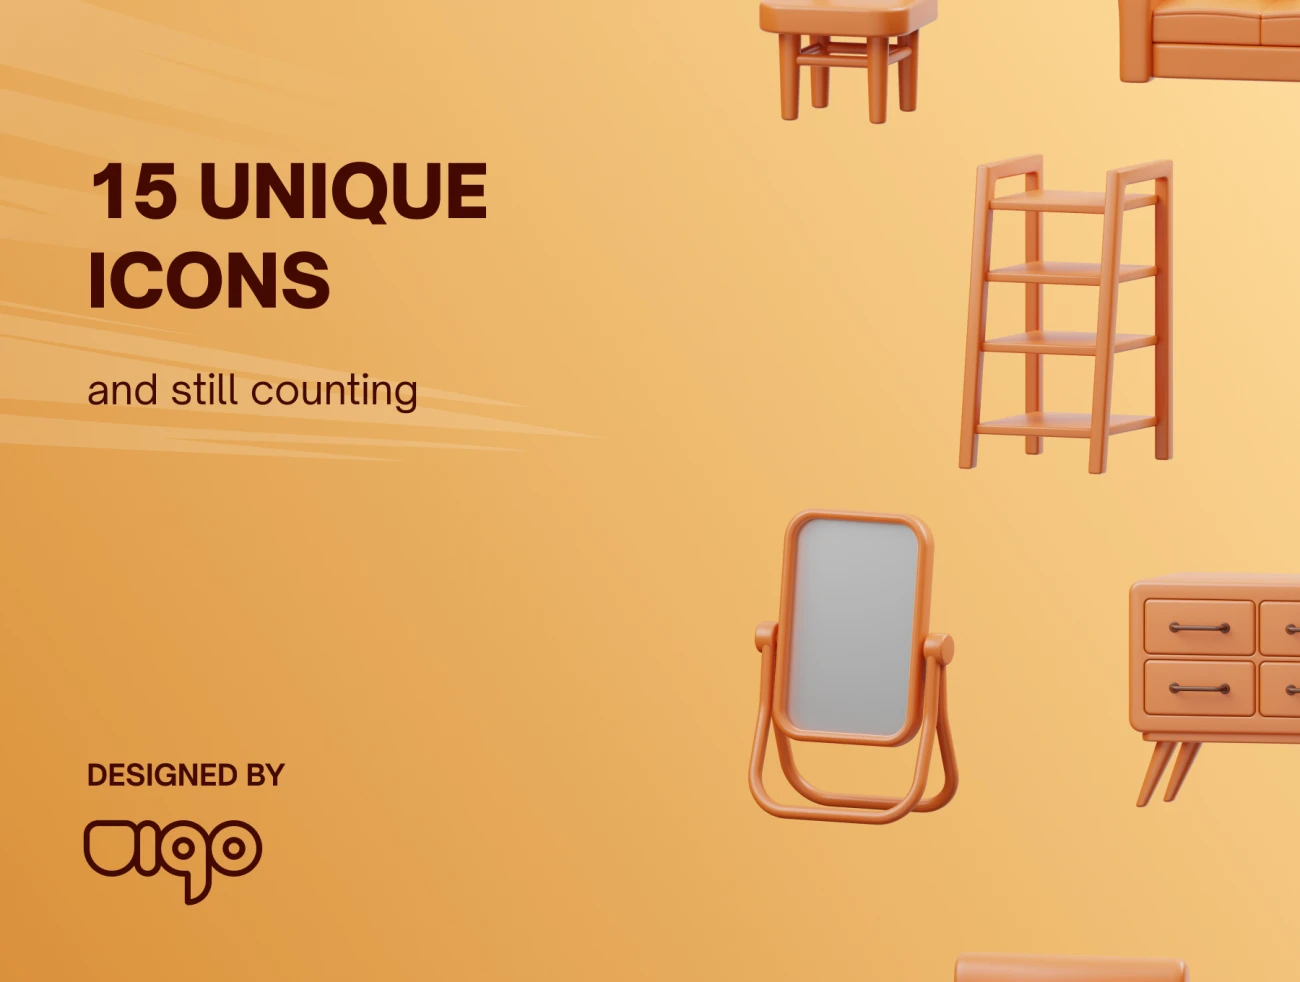 15款家居衣柜书桌3D图标模型 MYFURNITURE- 3D Furniture Icons .blender-3D/图标-到位啦UI